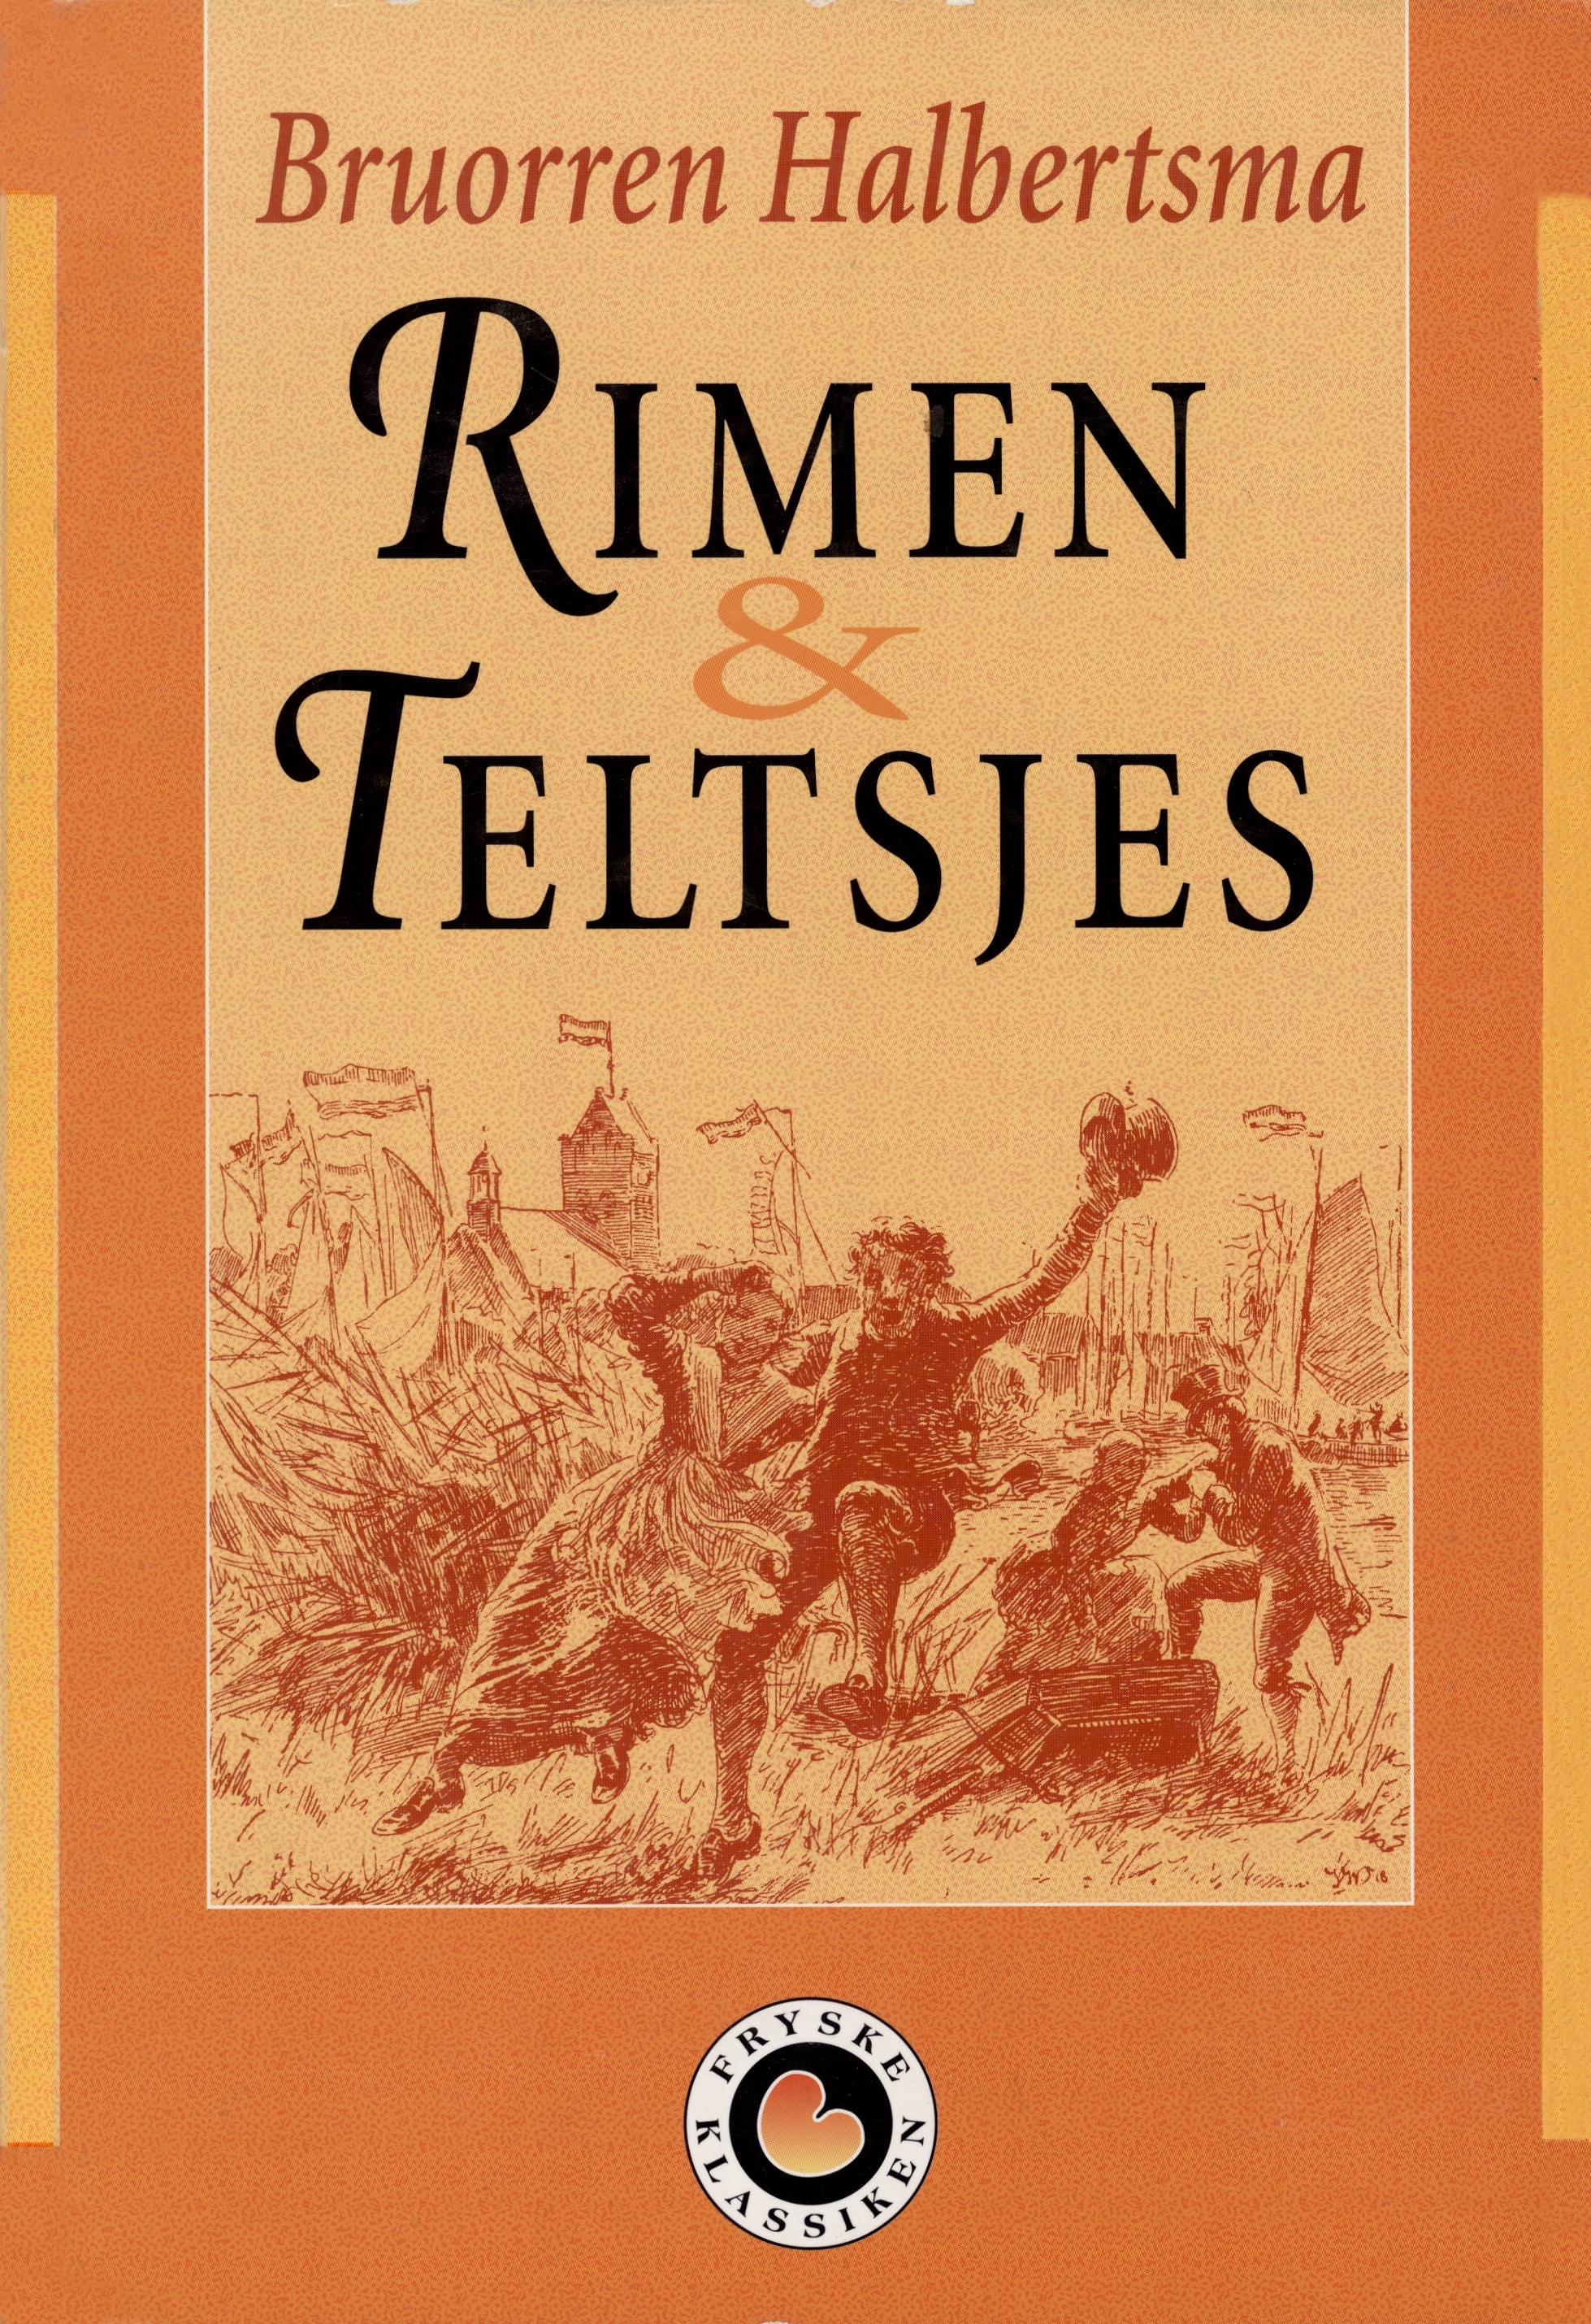 303 Rimen en Teltsjes Omslag editie Fryske Klassiken 1993.jpg